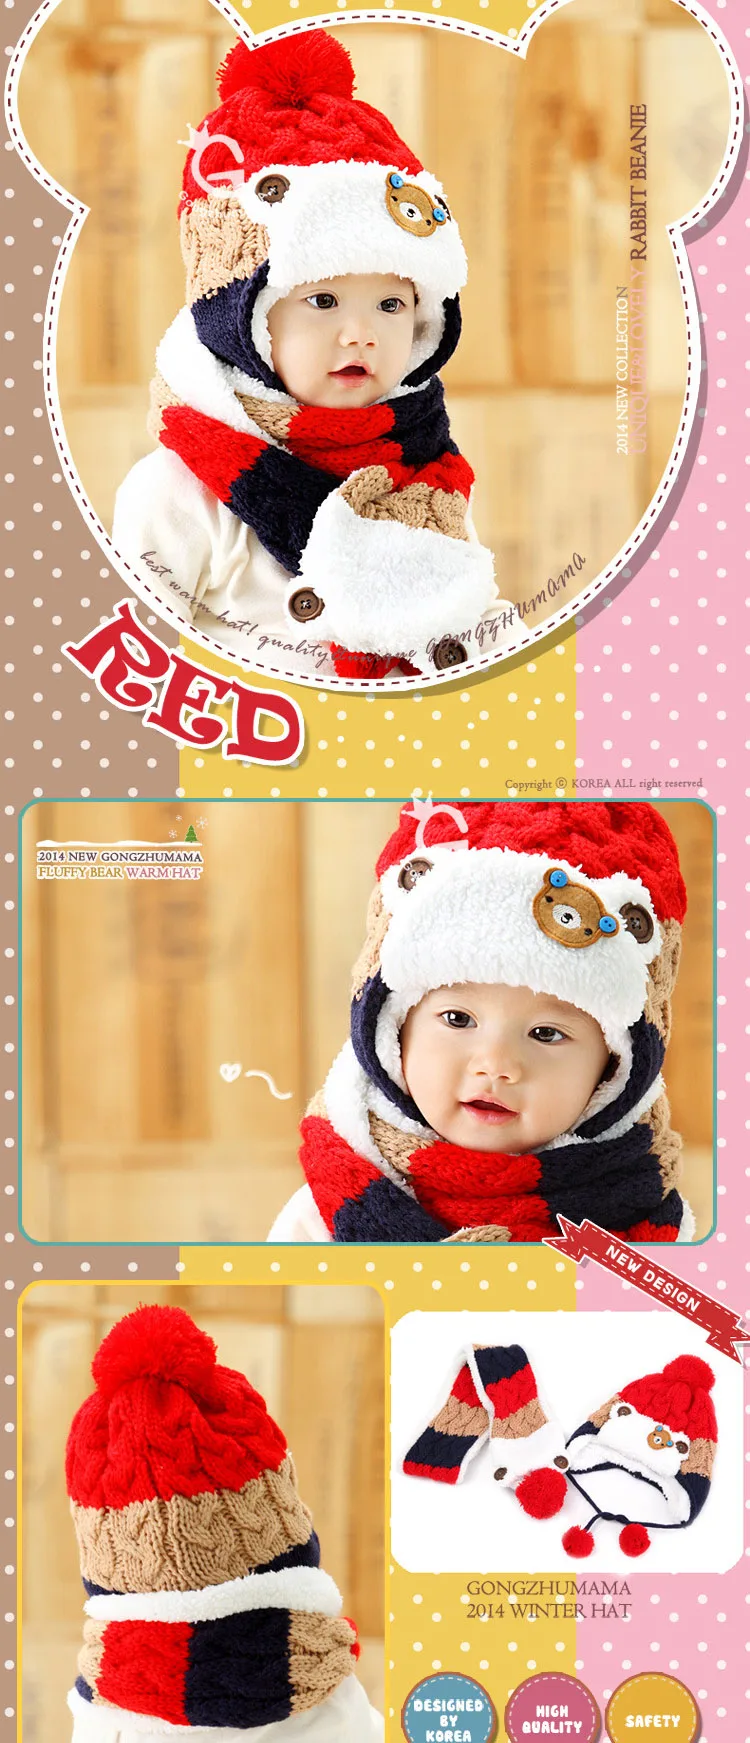 Doitbest 12 месяцев до 4 лет Детские вязаные шапки 2018 Корея медведь для мальчиков трикотажные головные уборы Зима 2 шт. меха для маленьких девочек